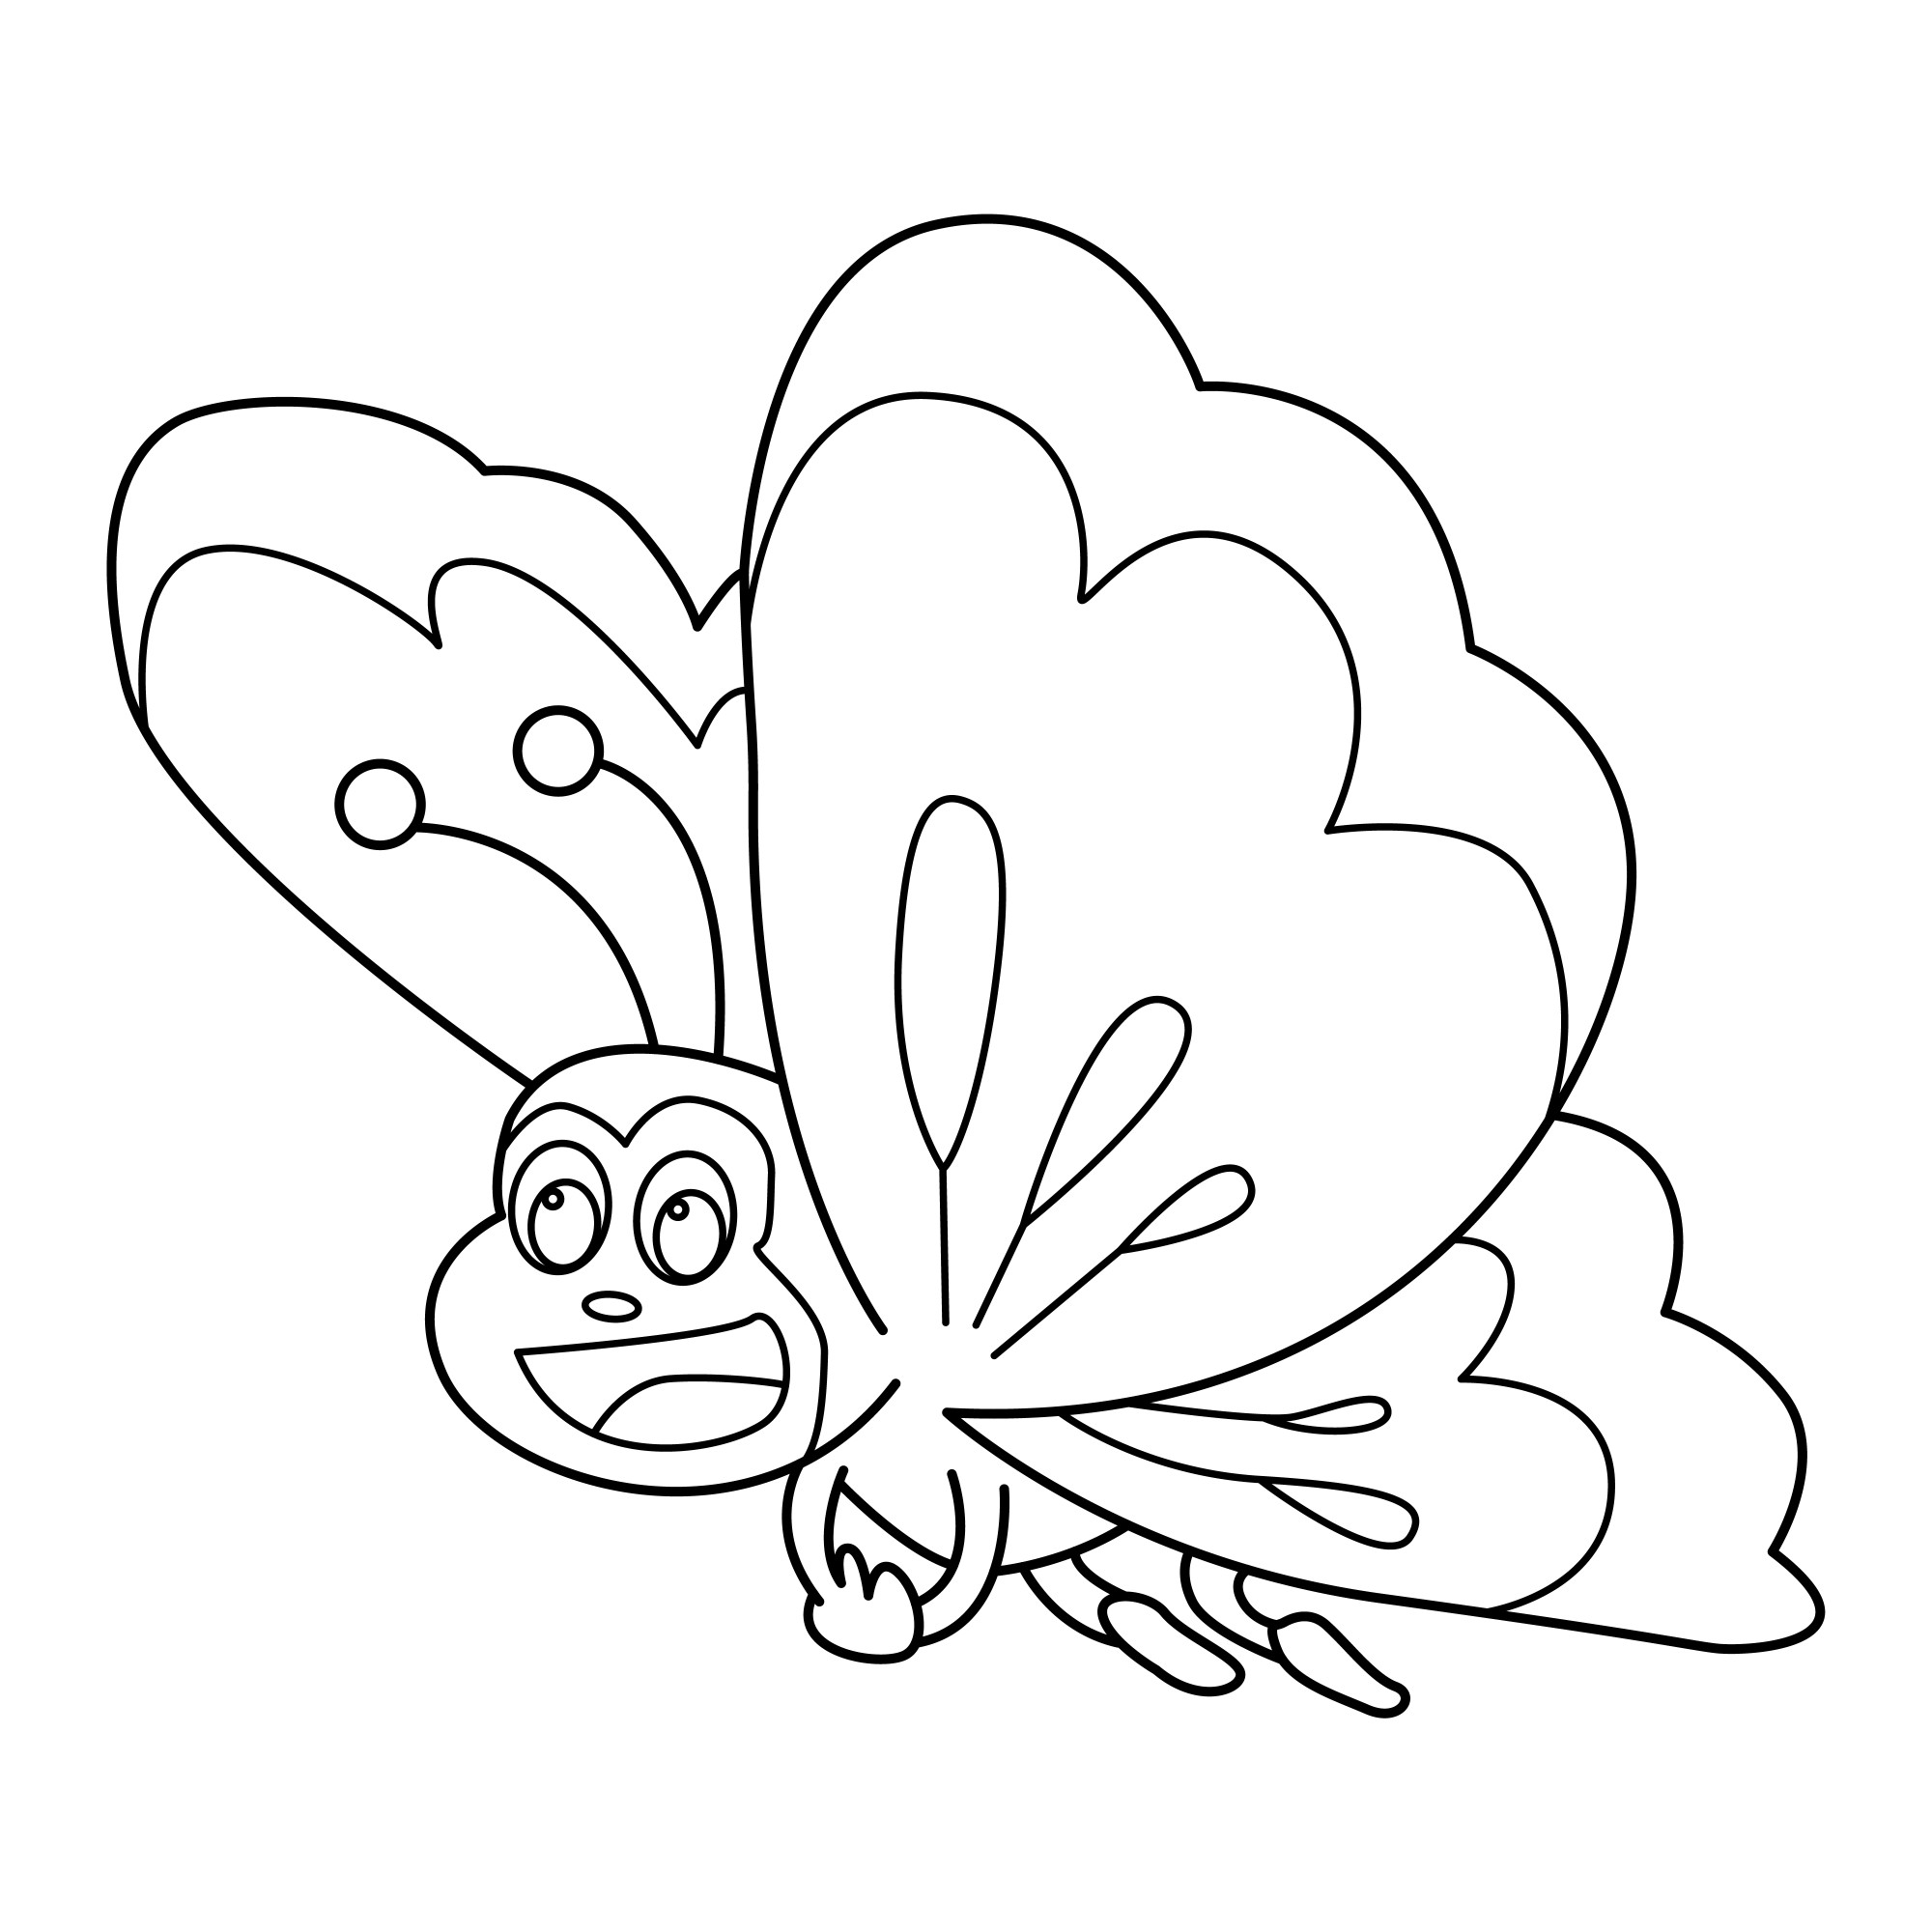 Раскраска для детей: бабочка с улыбкой на мордочке